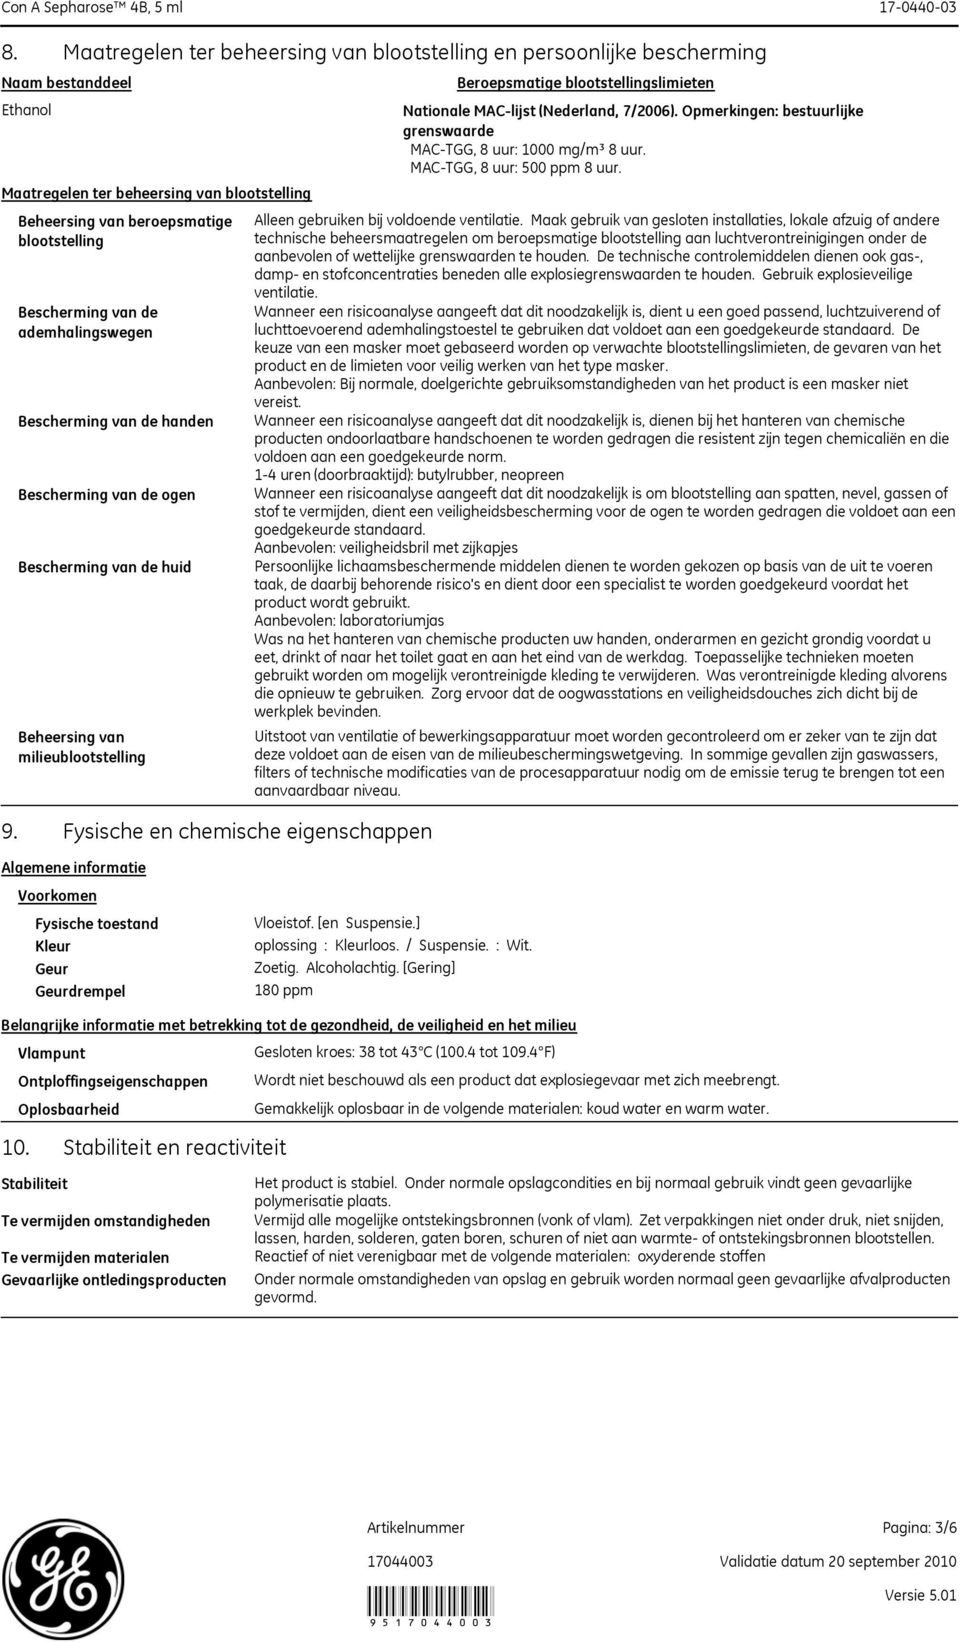 Fysische en chemische eigenschappen Beroepsmatige blootstellingslimieten Nationale MAC-lijst (Nederland, 7/2006). Opmerkingen: bestuurlijke grenswaarde MAC-TGG, 8 uur: 1000 mg/m³ 8 uur.